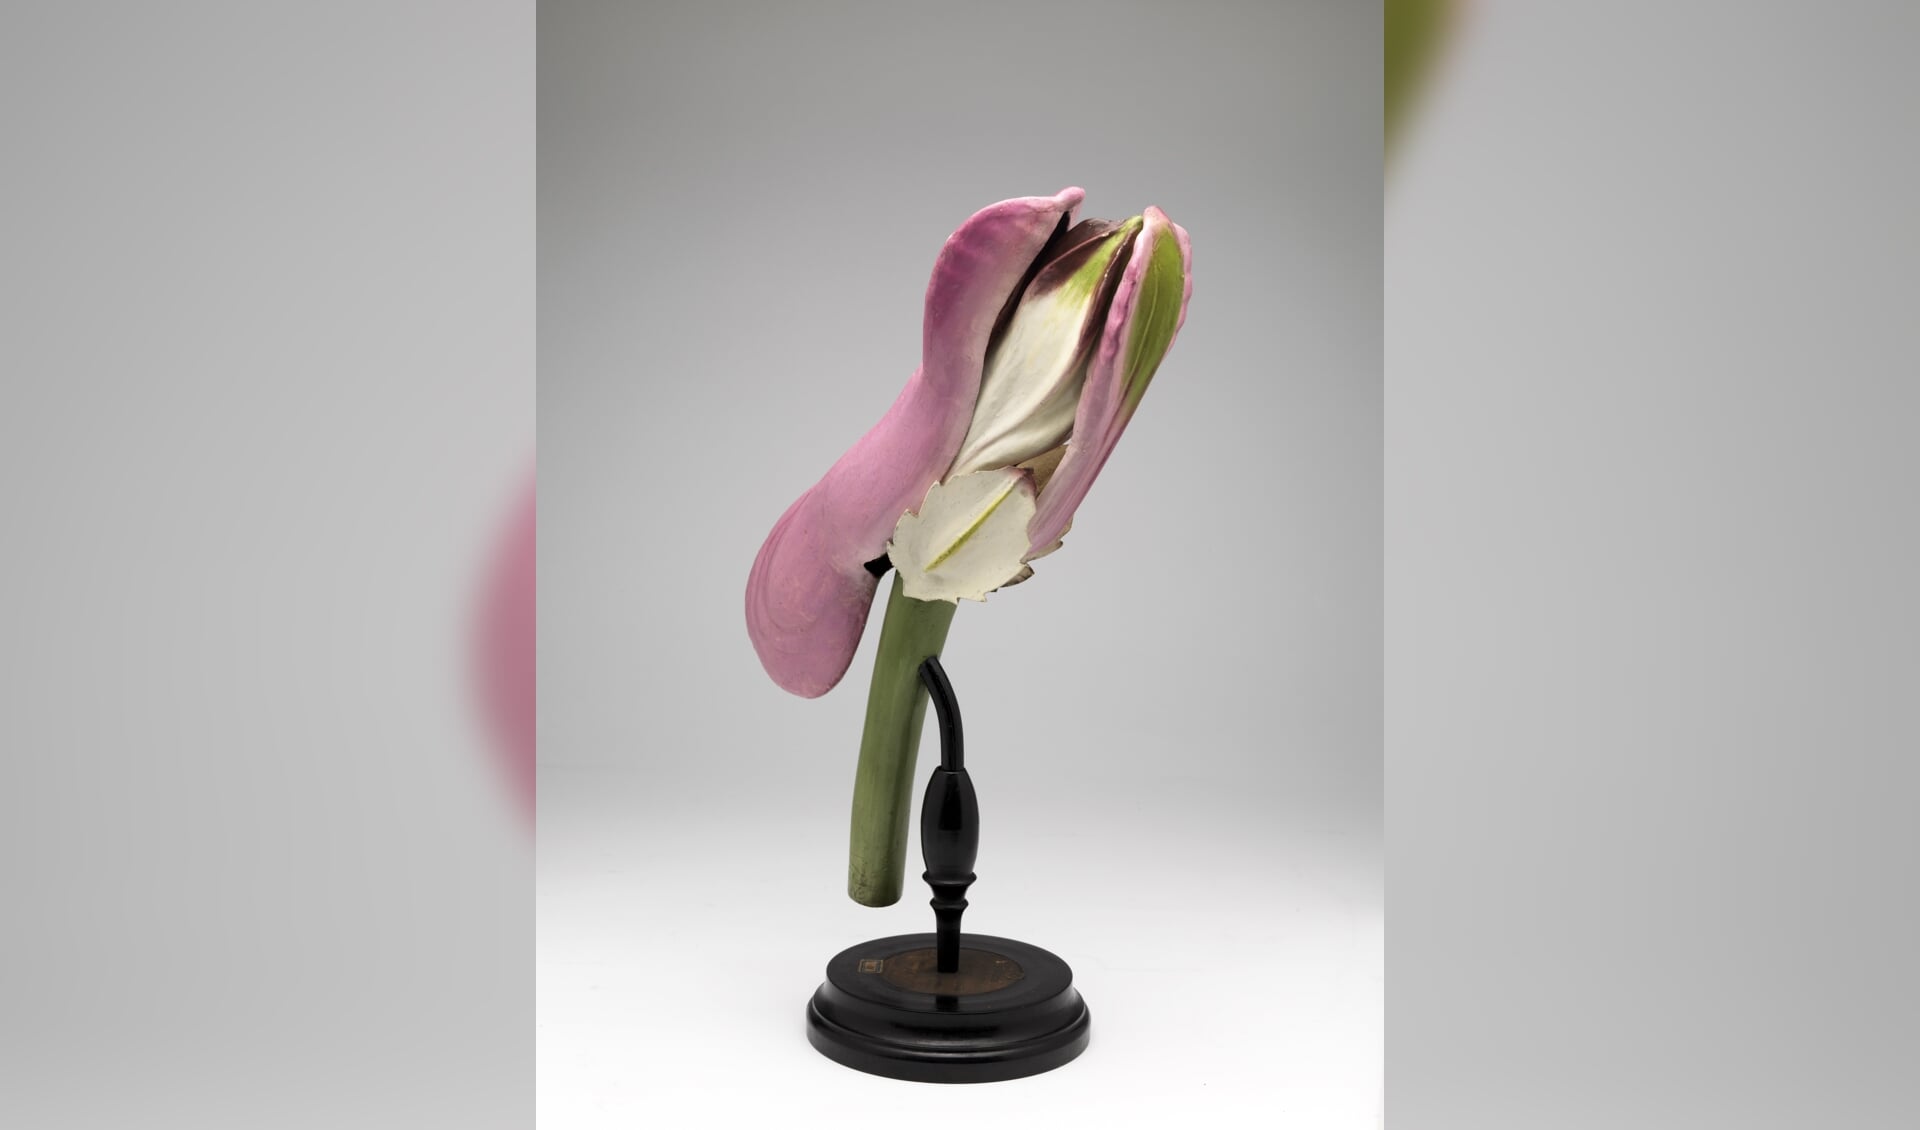 De 'bloemen' in de expositie zijn sterk uitvergrote 3D-modellen van ongeveer 40 cm.